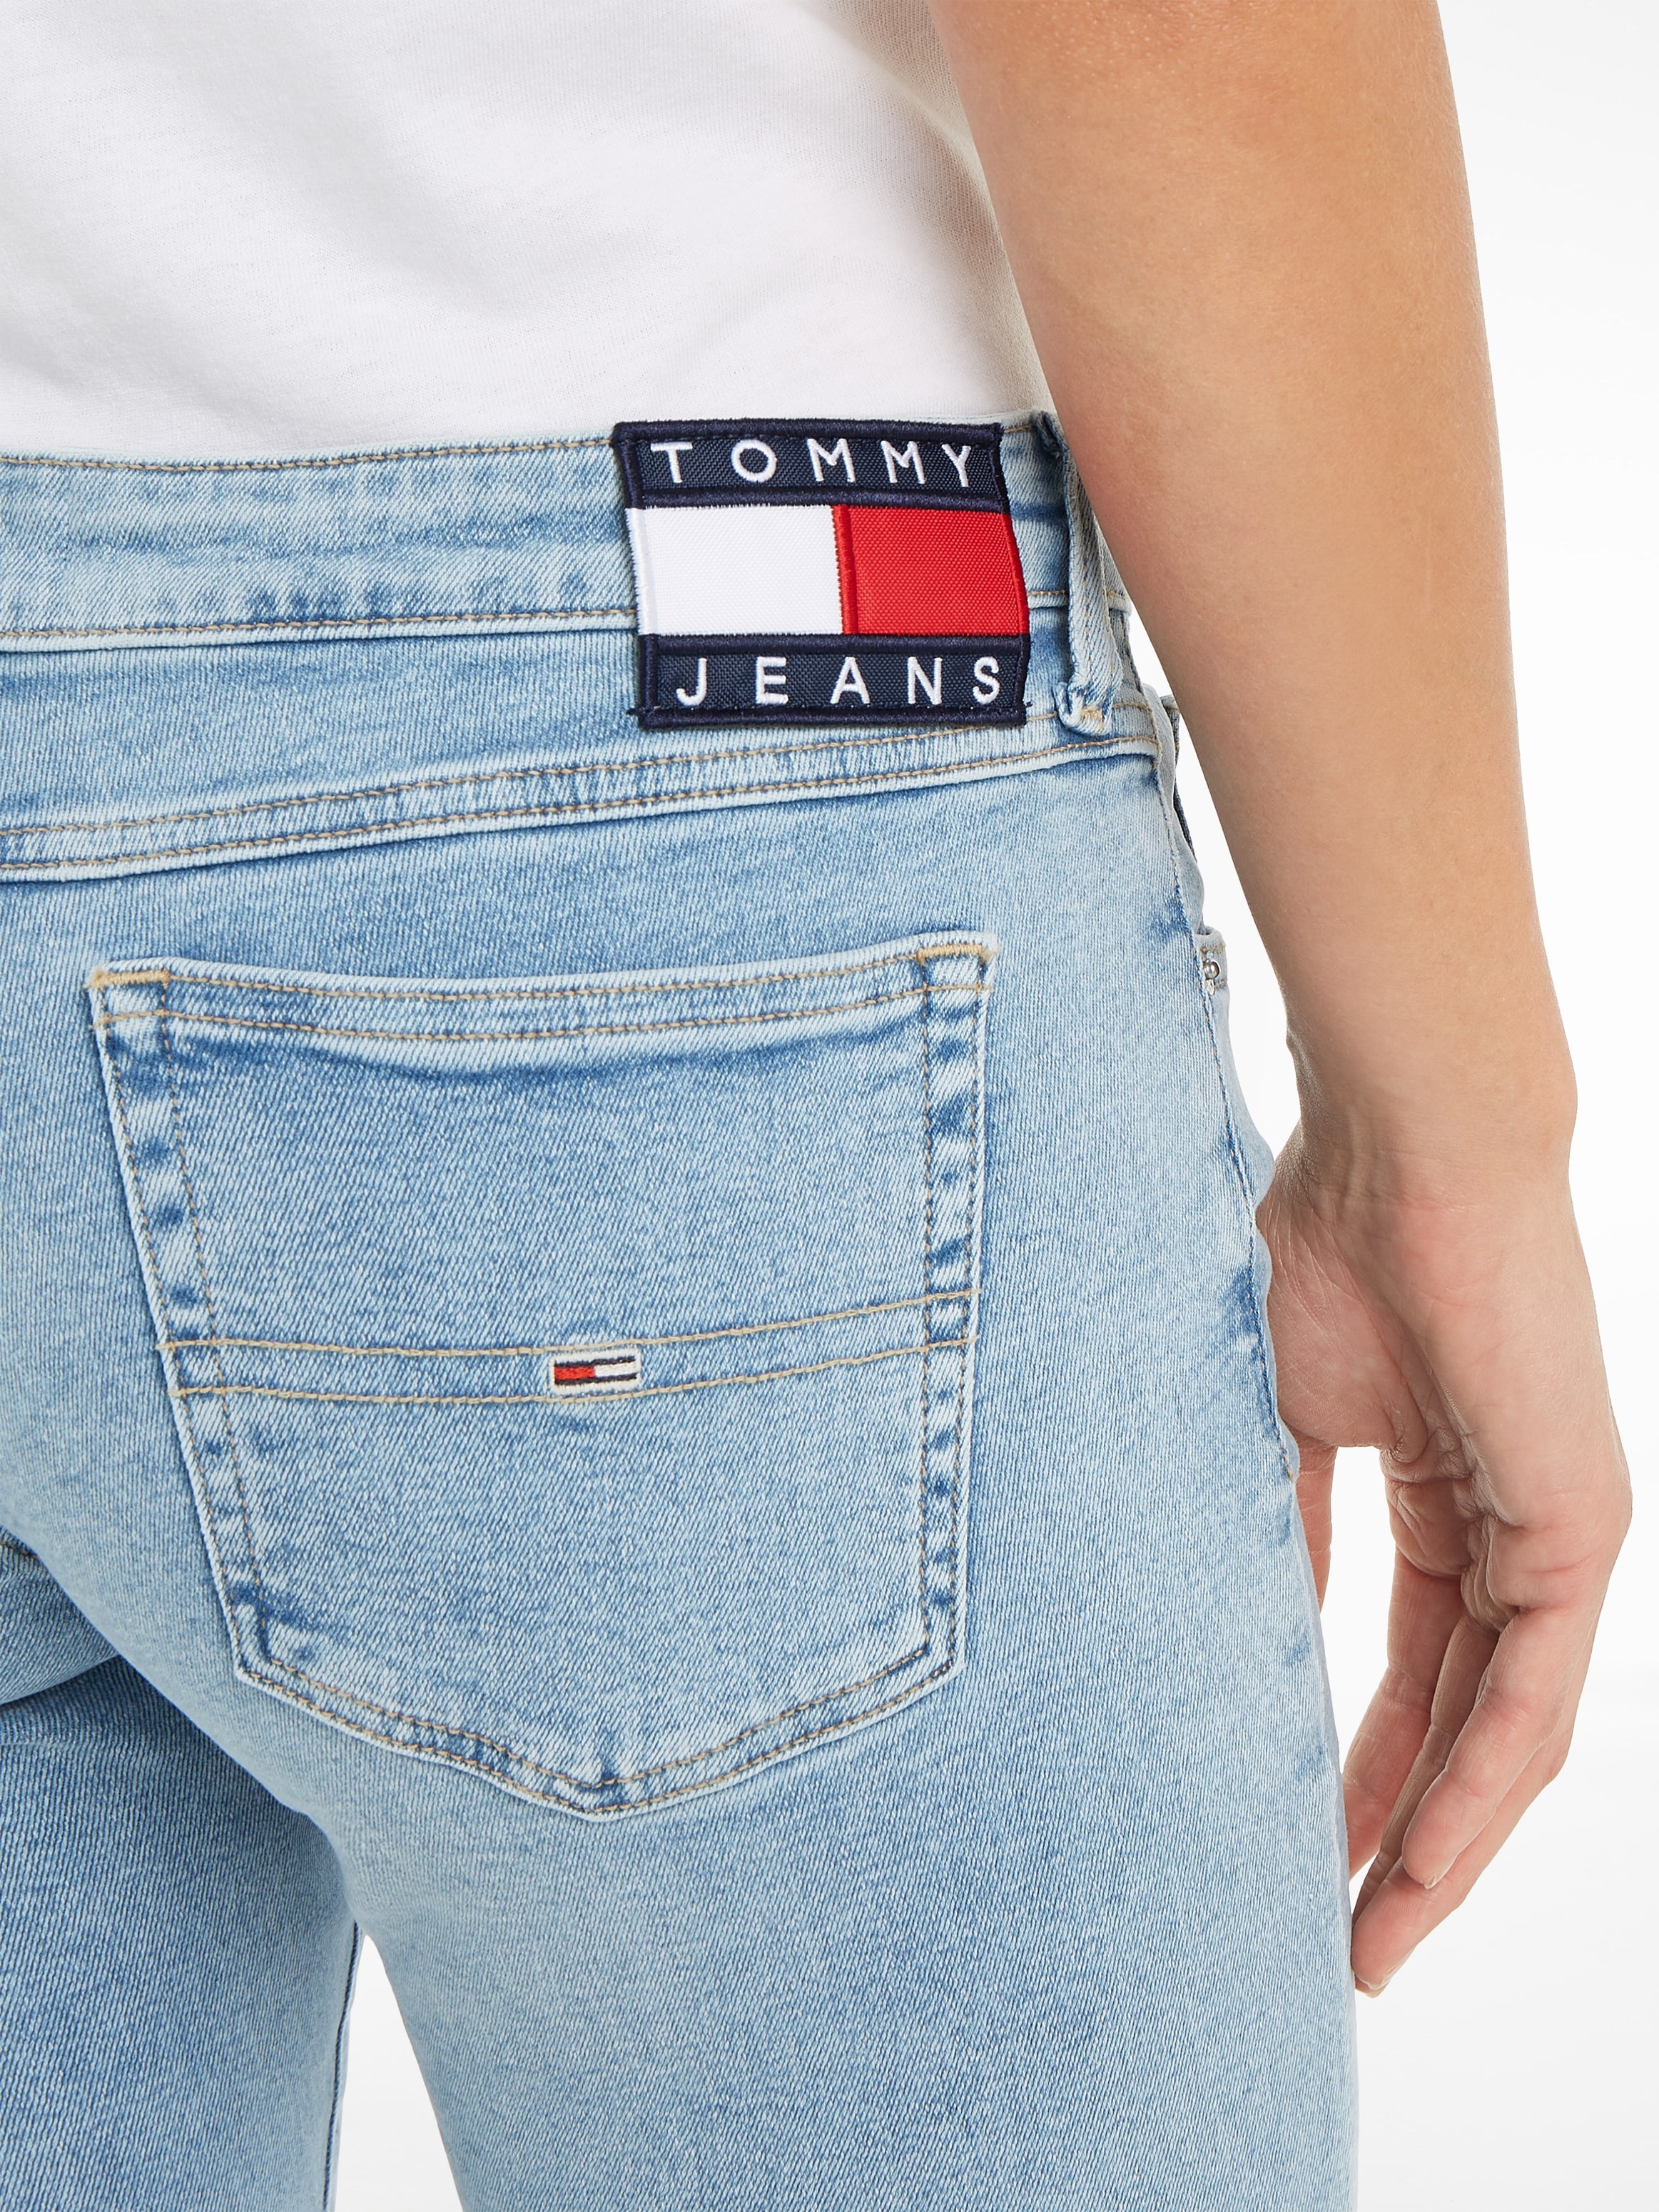 mit Tommy bei Skinny-fit-Jeans, dezenten ♕ Labelapplikationen Jeans